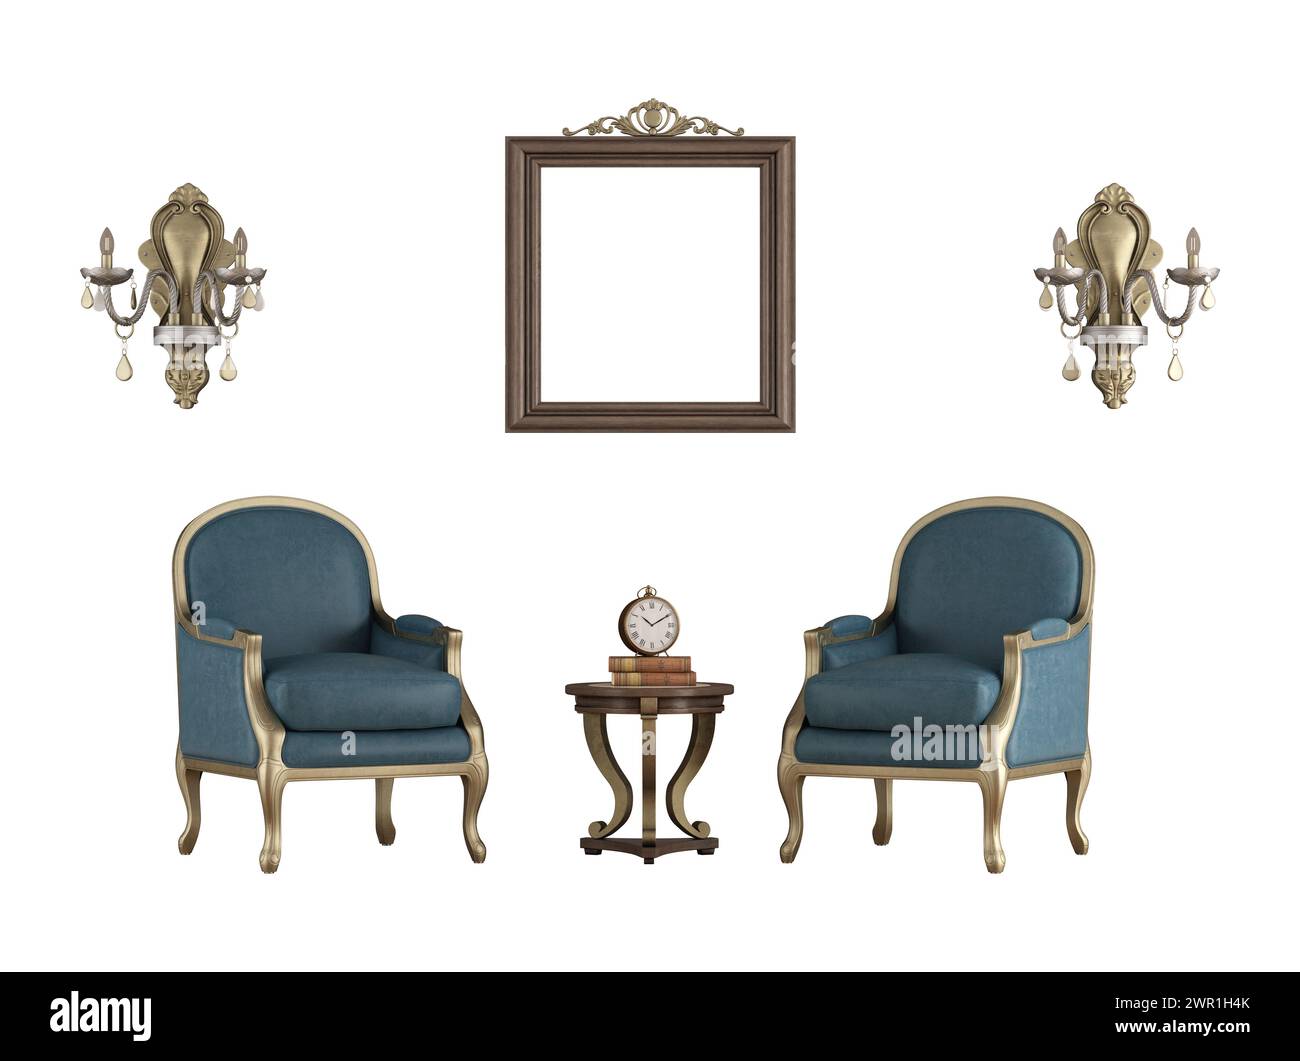 sillones clásicos, lámparas ornamentales y marco de imagen en blanco para maqueta aislada en blanco - representación 3d. Foto de stock